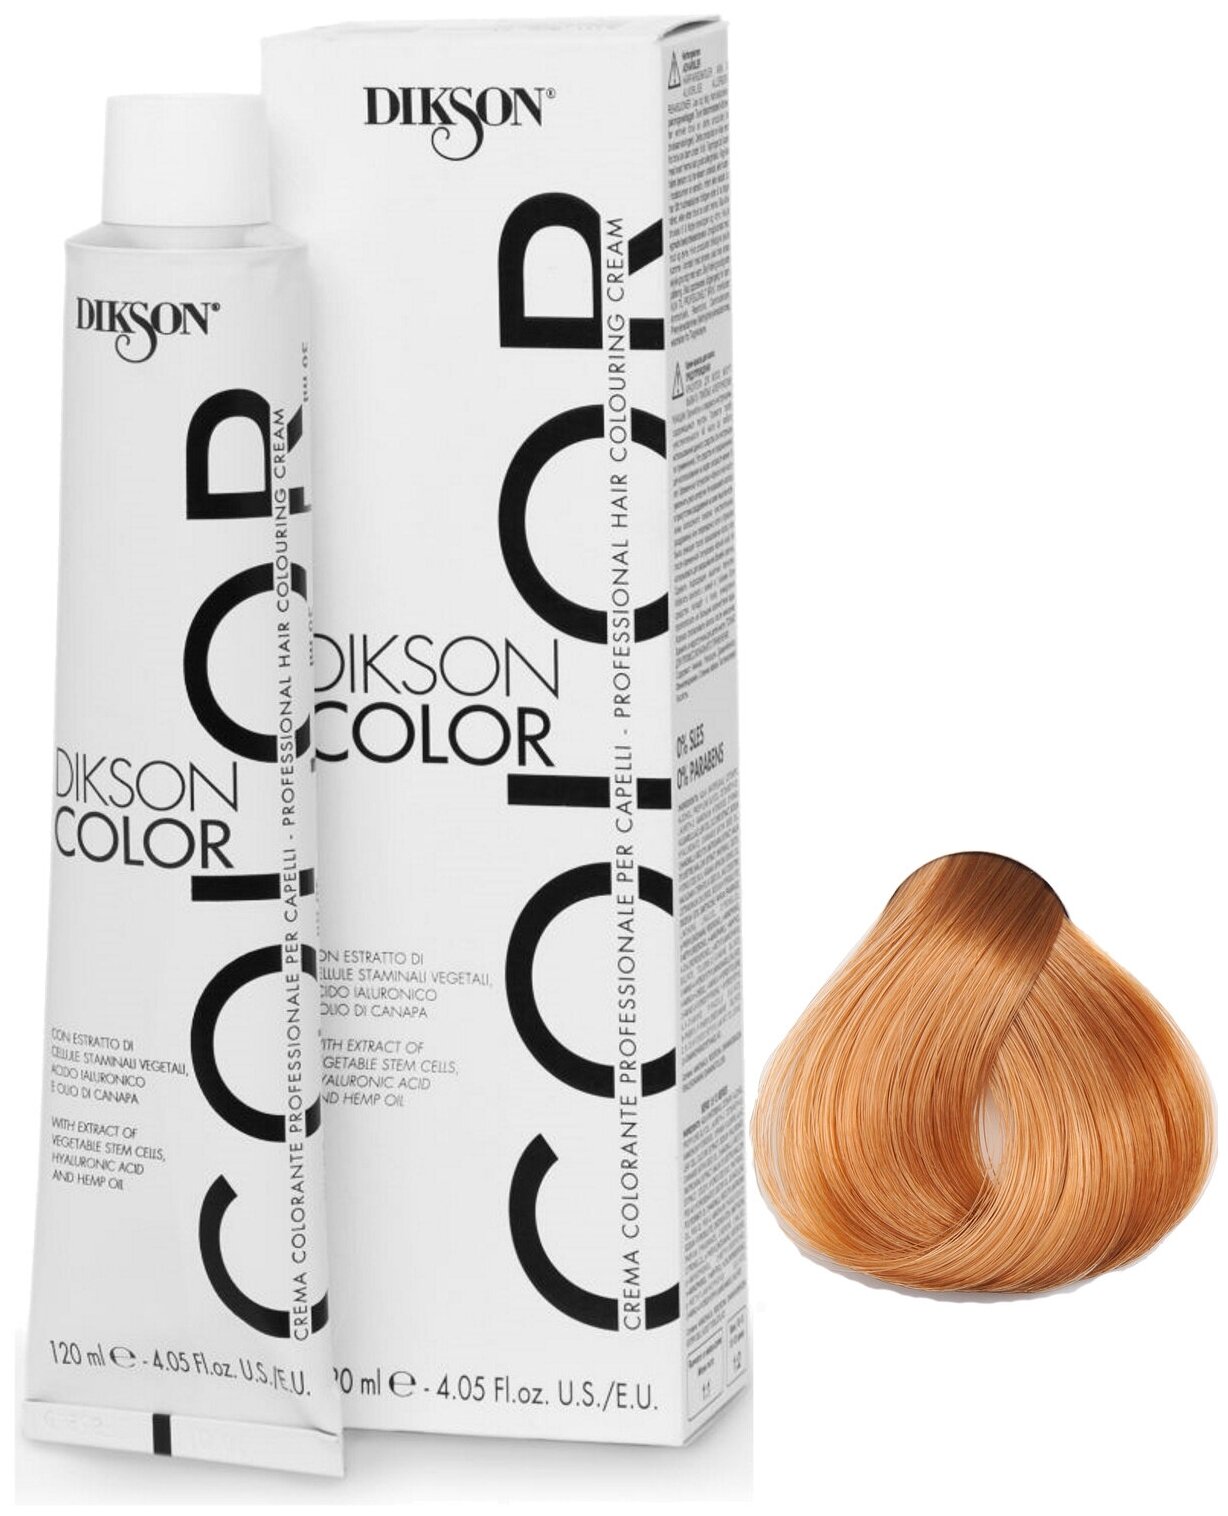 Крем-краска COLOR для окрашивания волос DIKSON 8.3 светло-русый с золотистым оттенком 120 мл